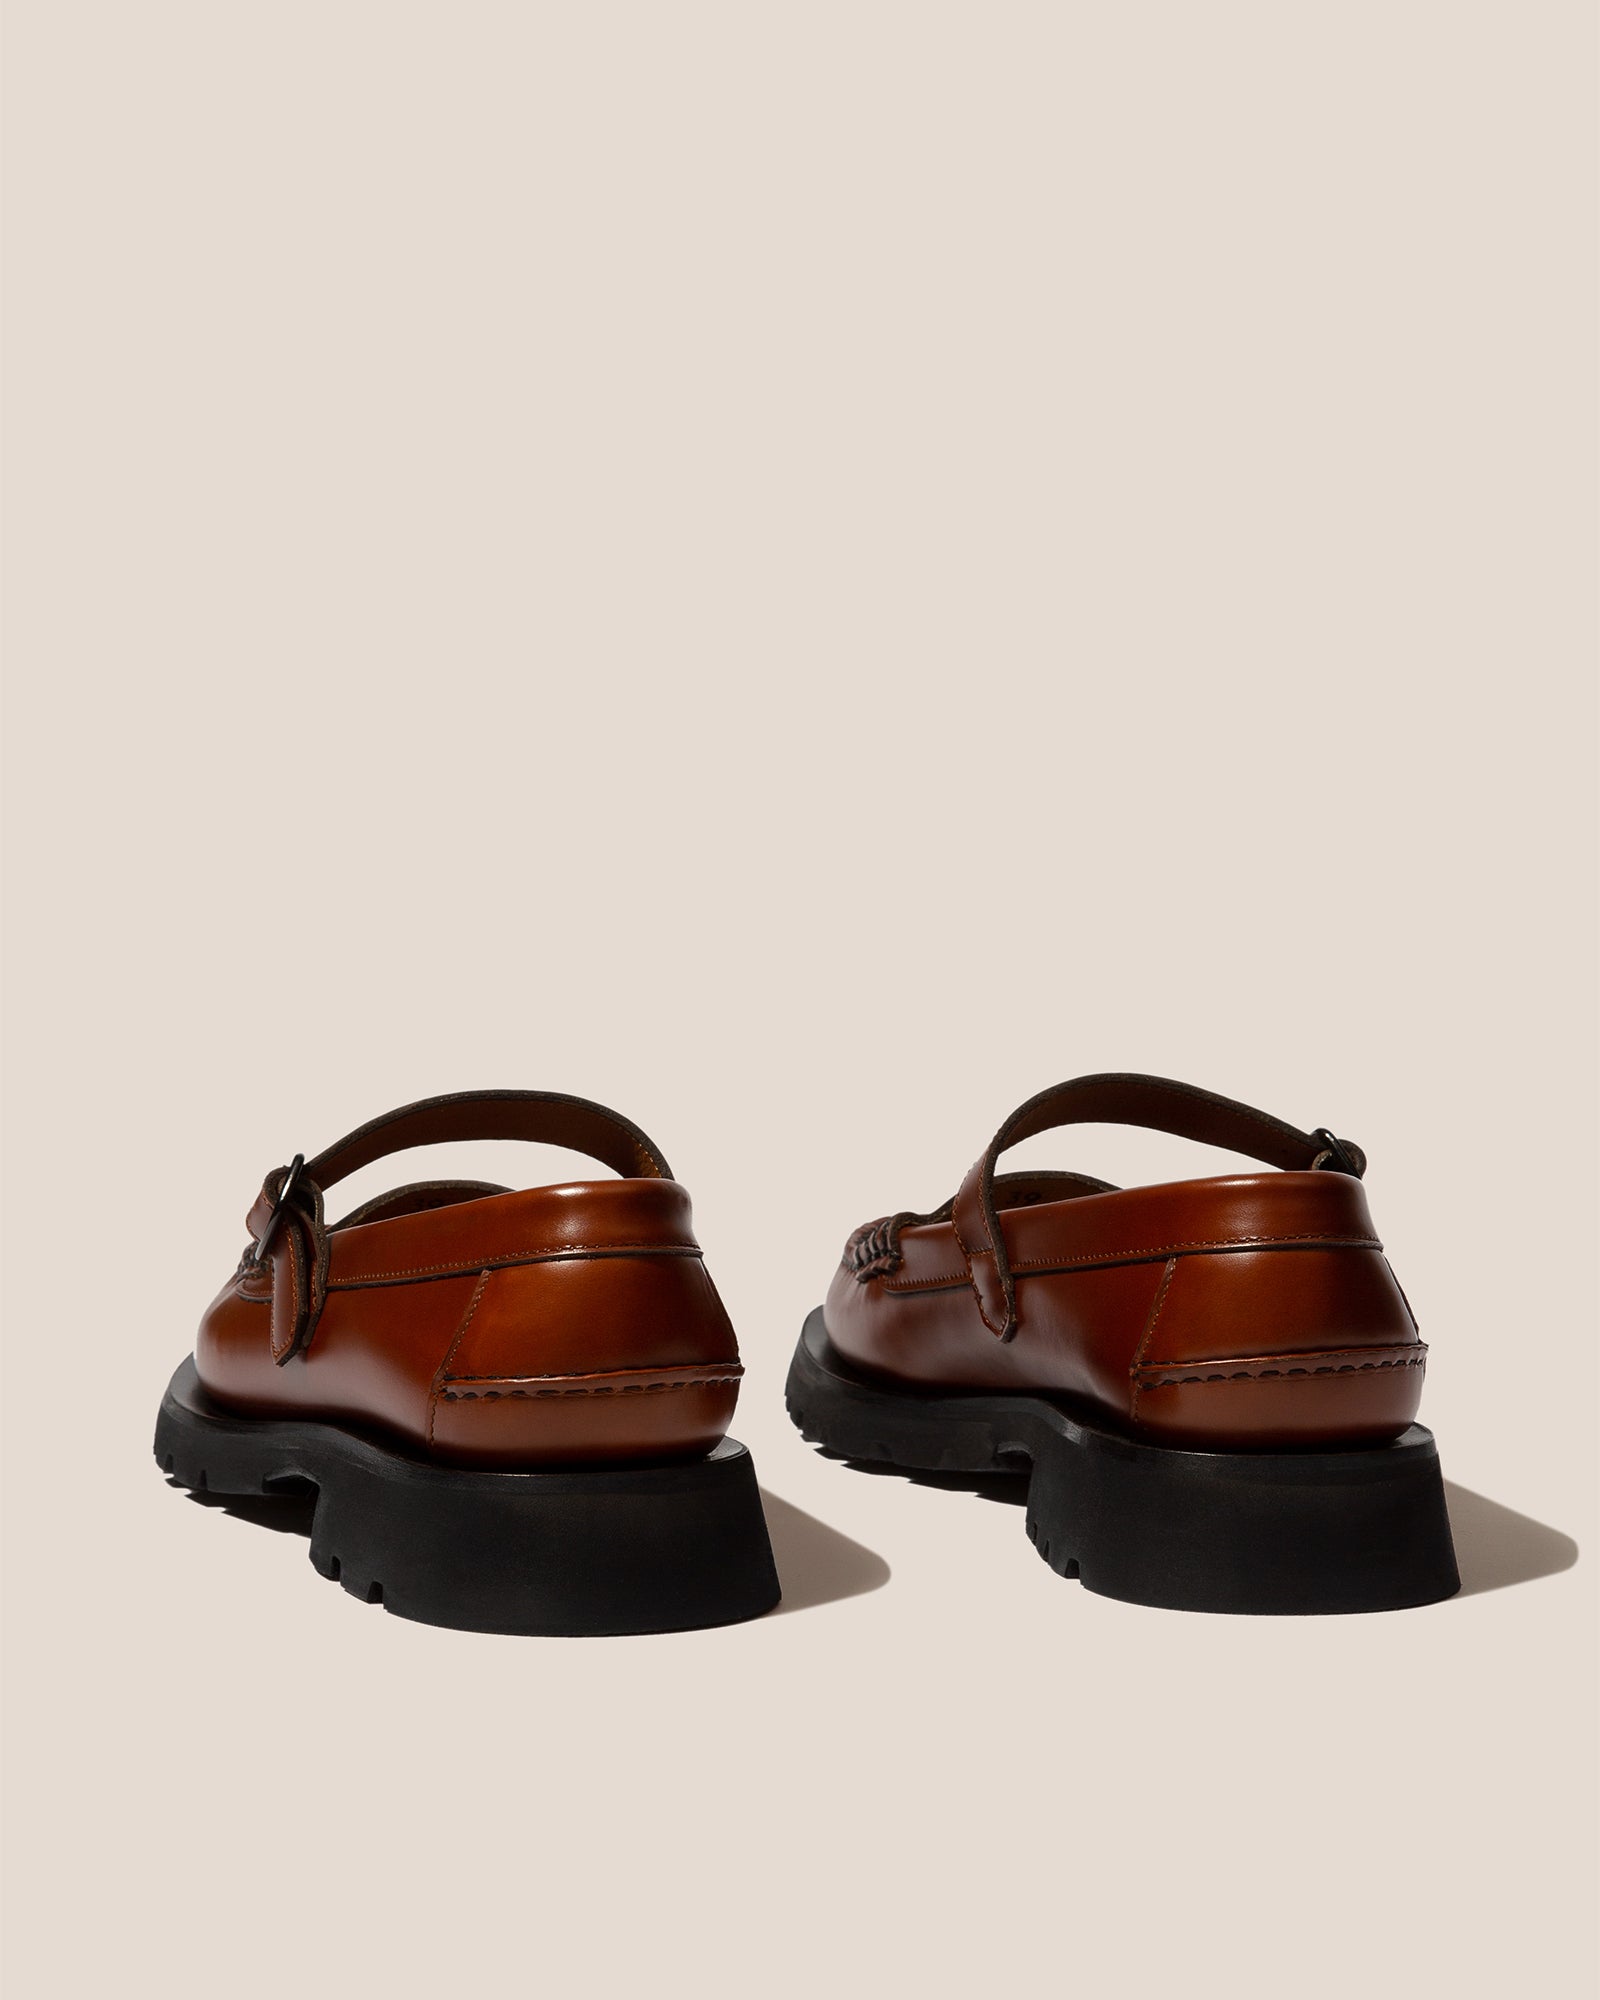 Louis Vuitton Black leather Sneakers, Size 8 Men (40.5/41 EU), DIY sole fix